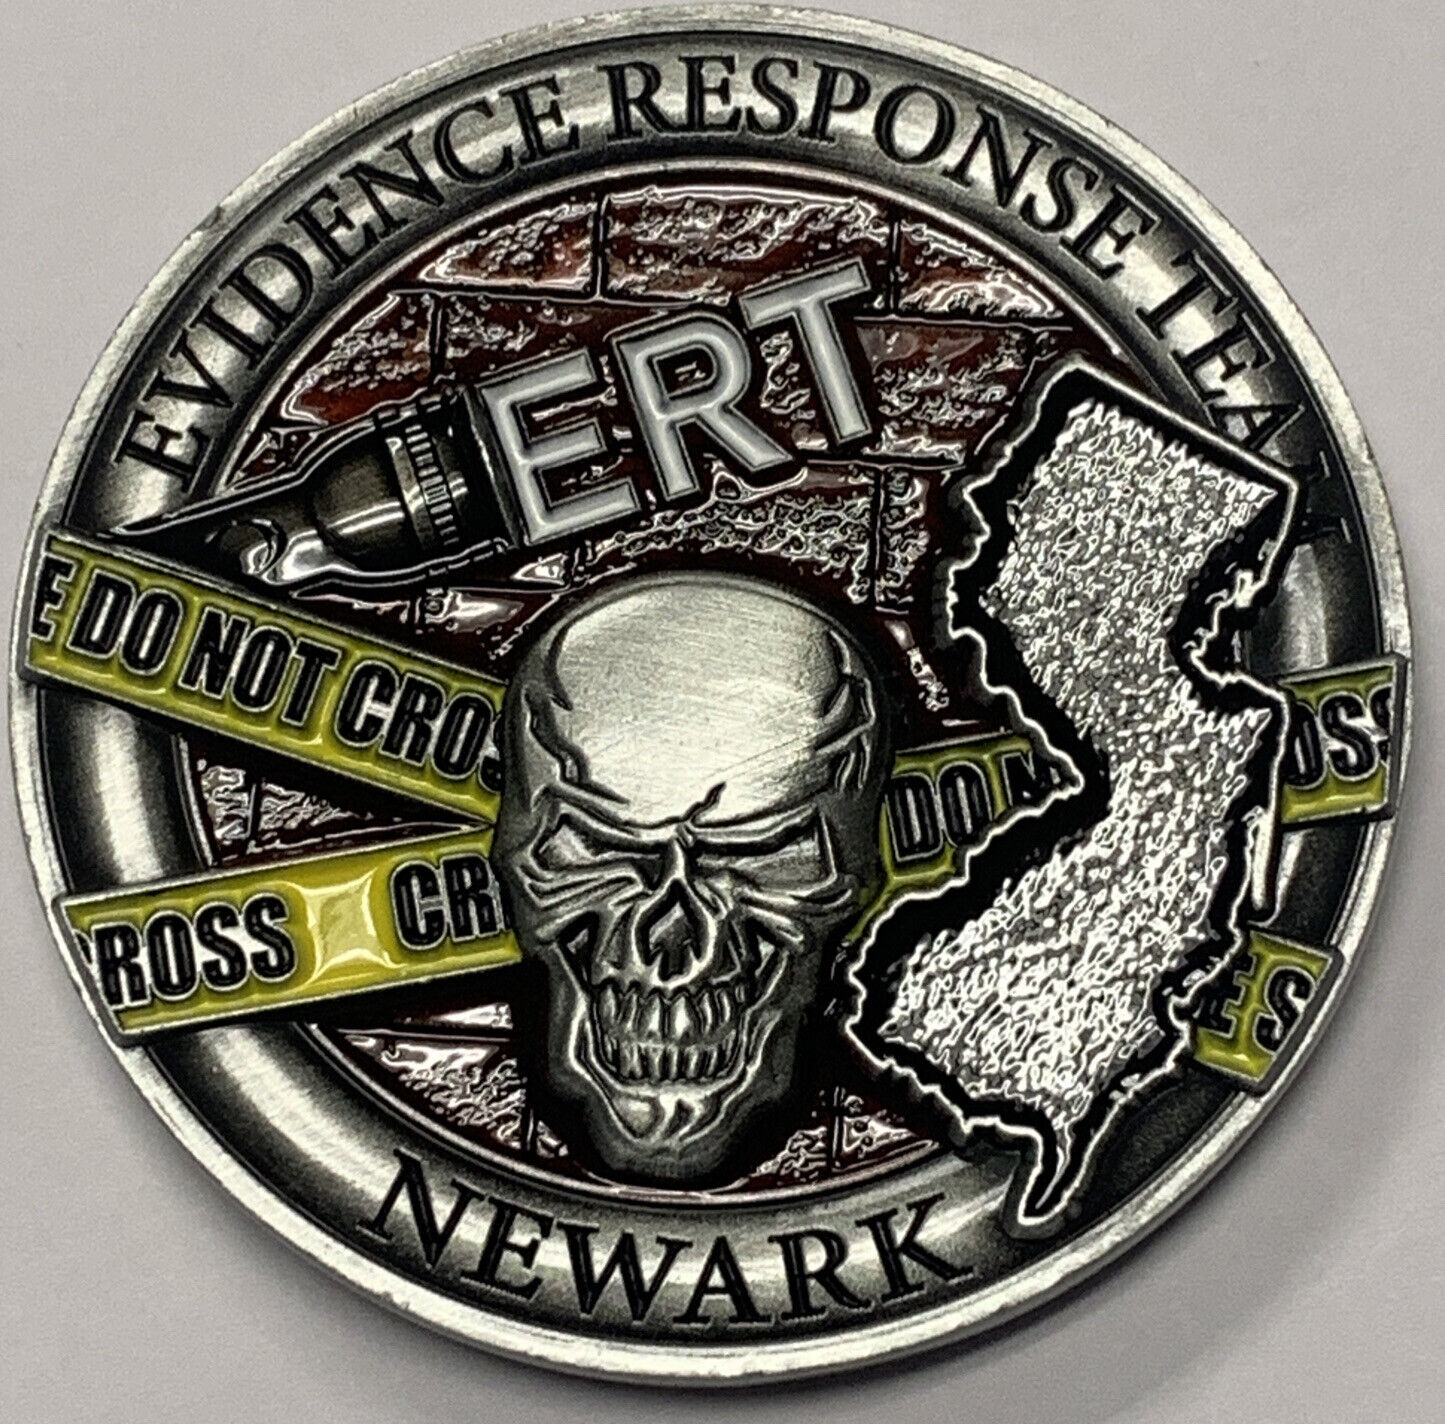 FBI Newark  ERT Evidence Response Team Forensics  Investigations challenge coin